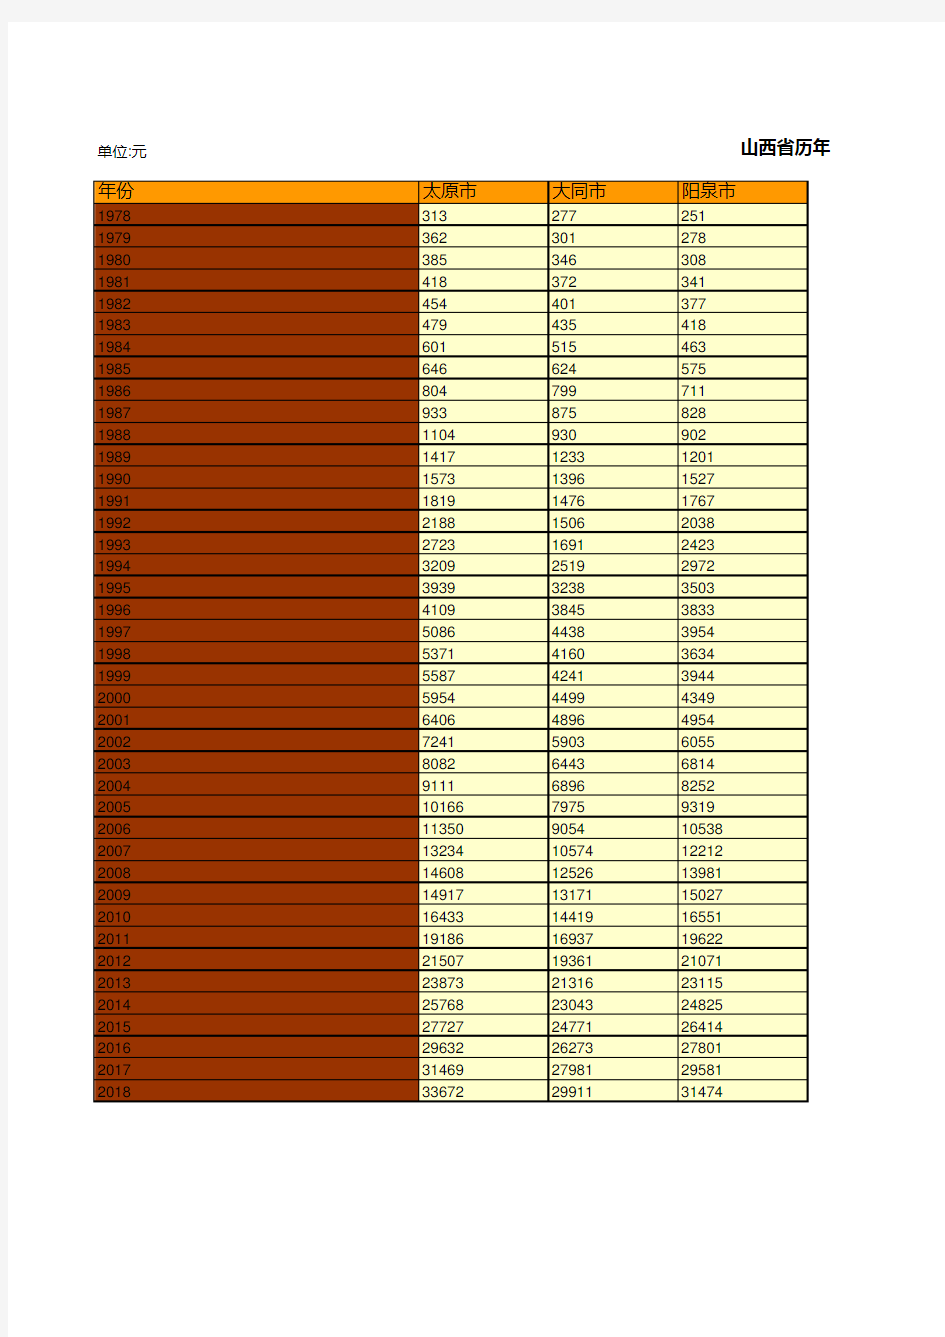 山西全省各市县区历年城镇居民人均可支配收入统计(1978-2019)